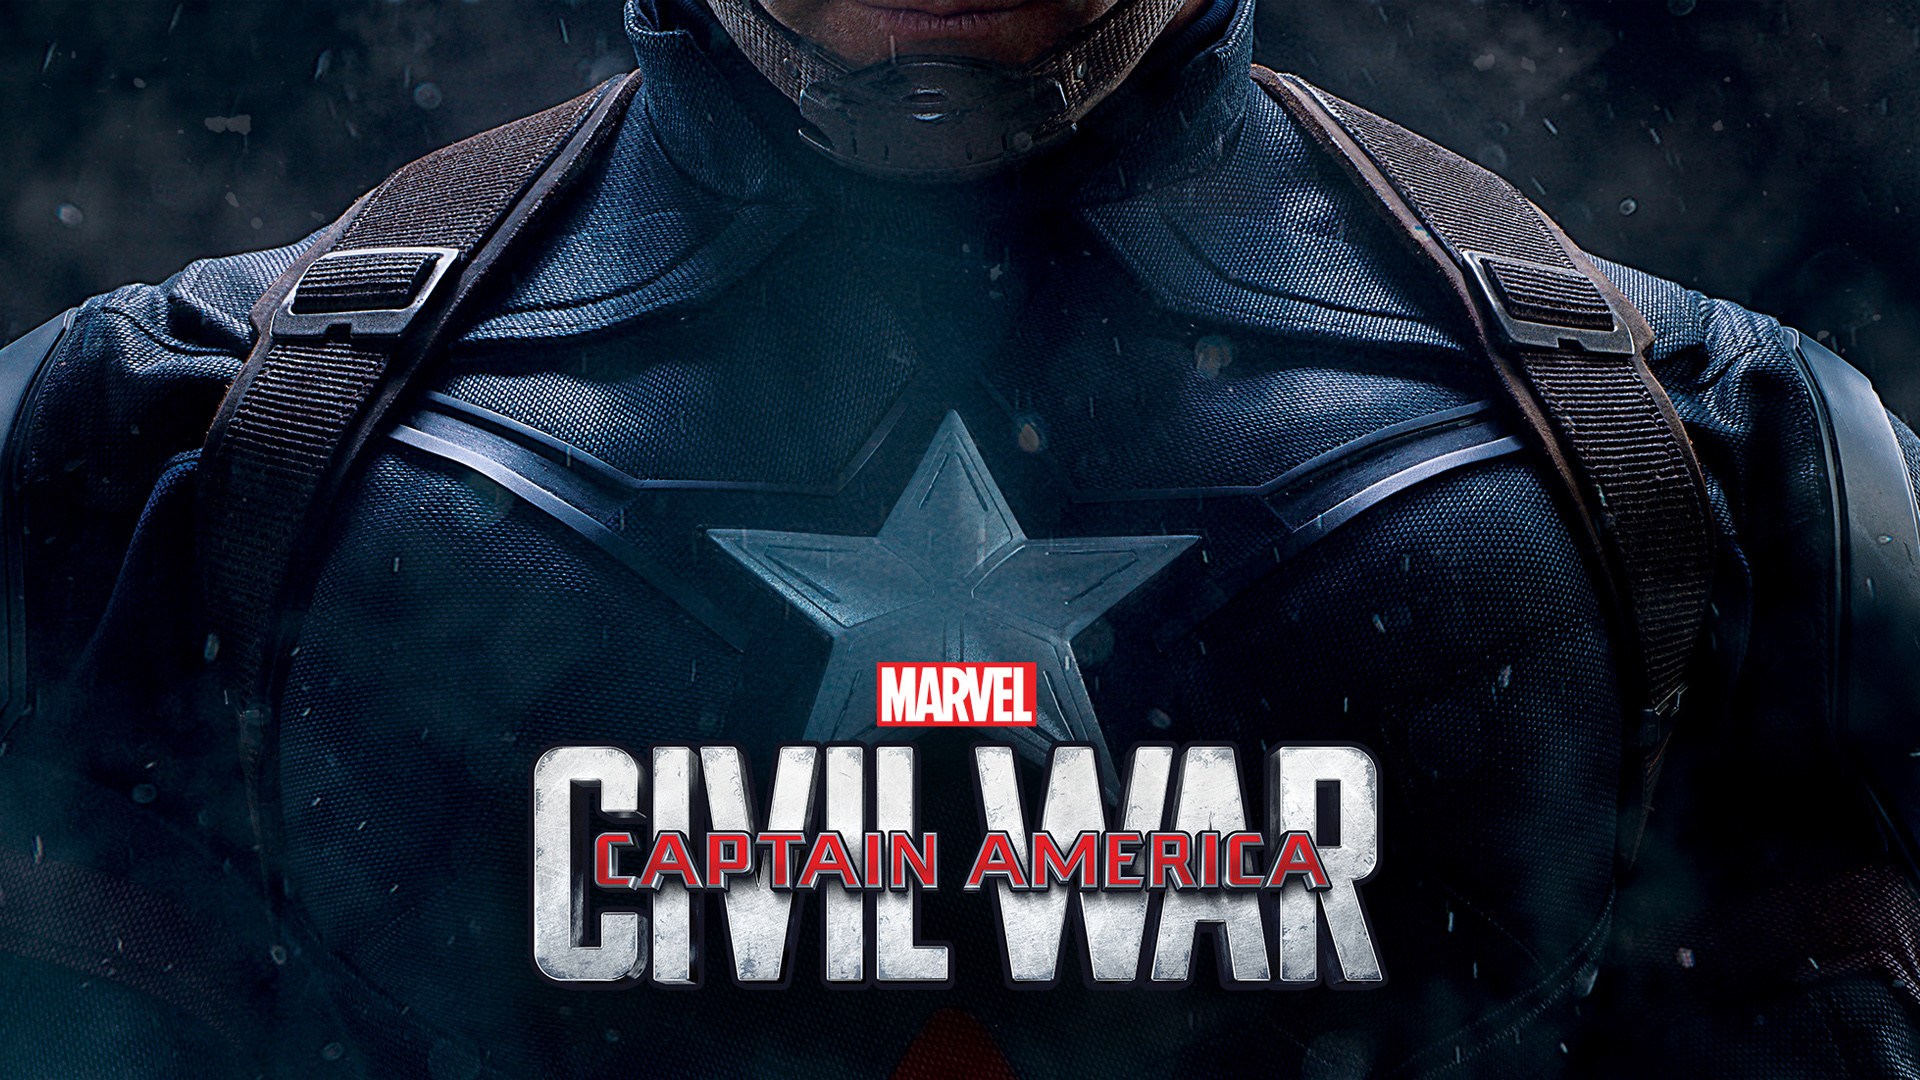 Capatin America: Civil War